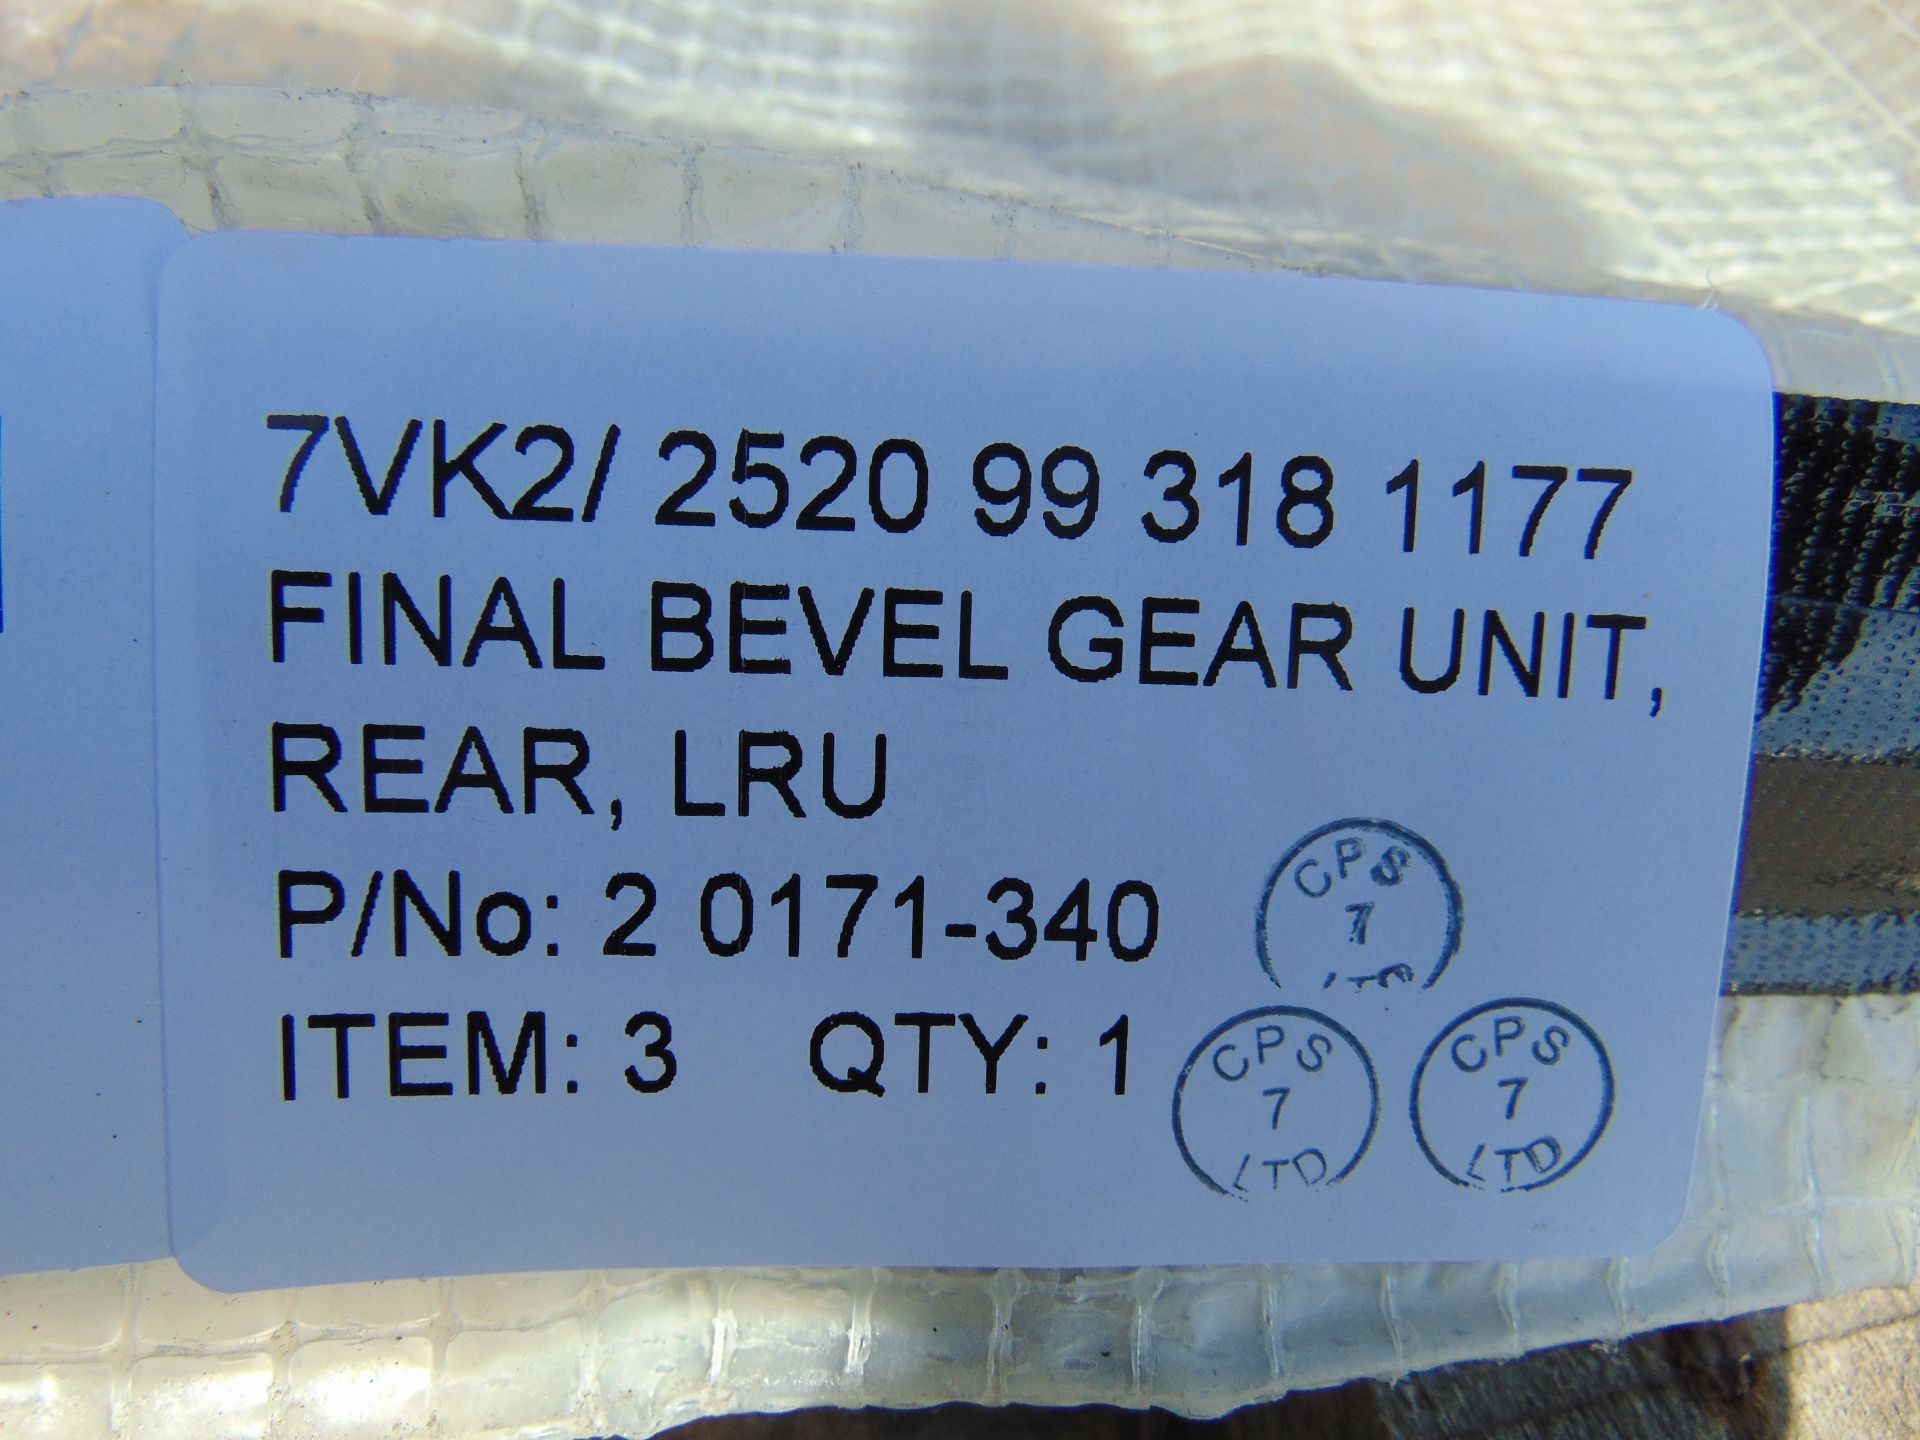 BVS10 Bevel Gear Unit P/No 2 0170-340 - Image 8 of 10